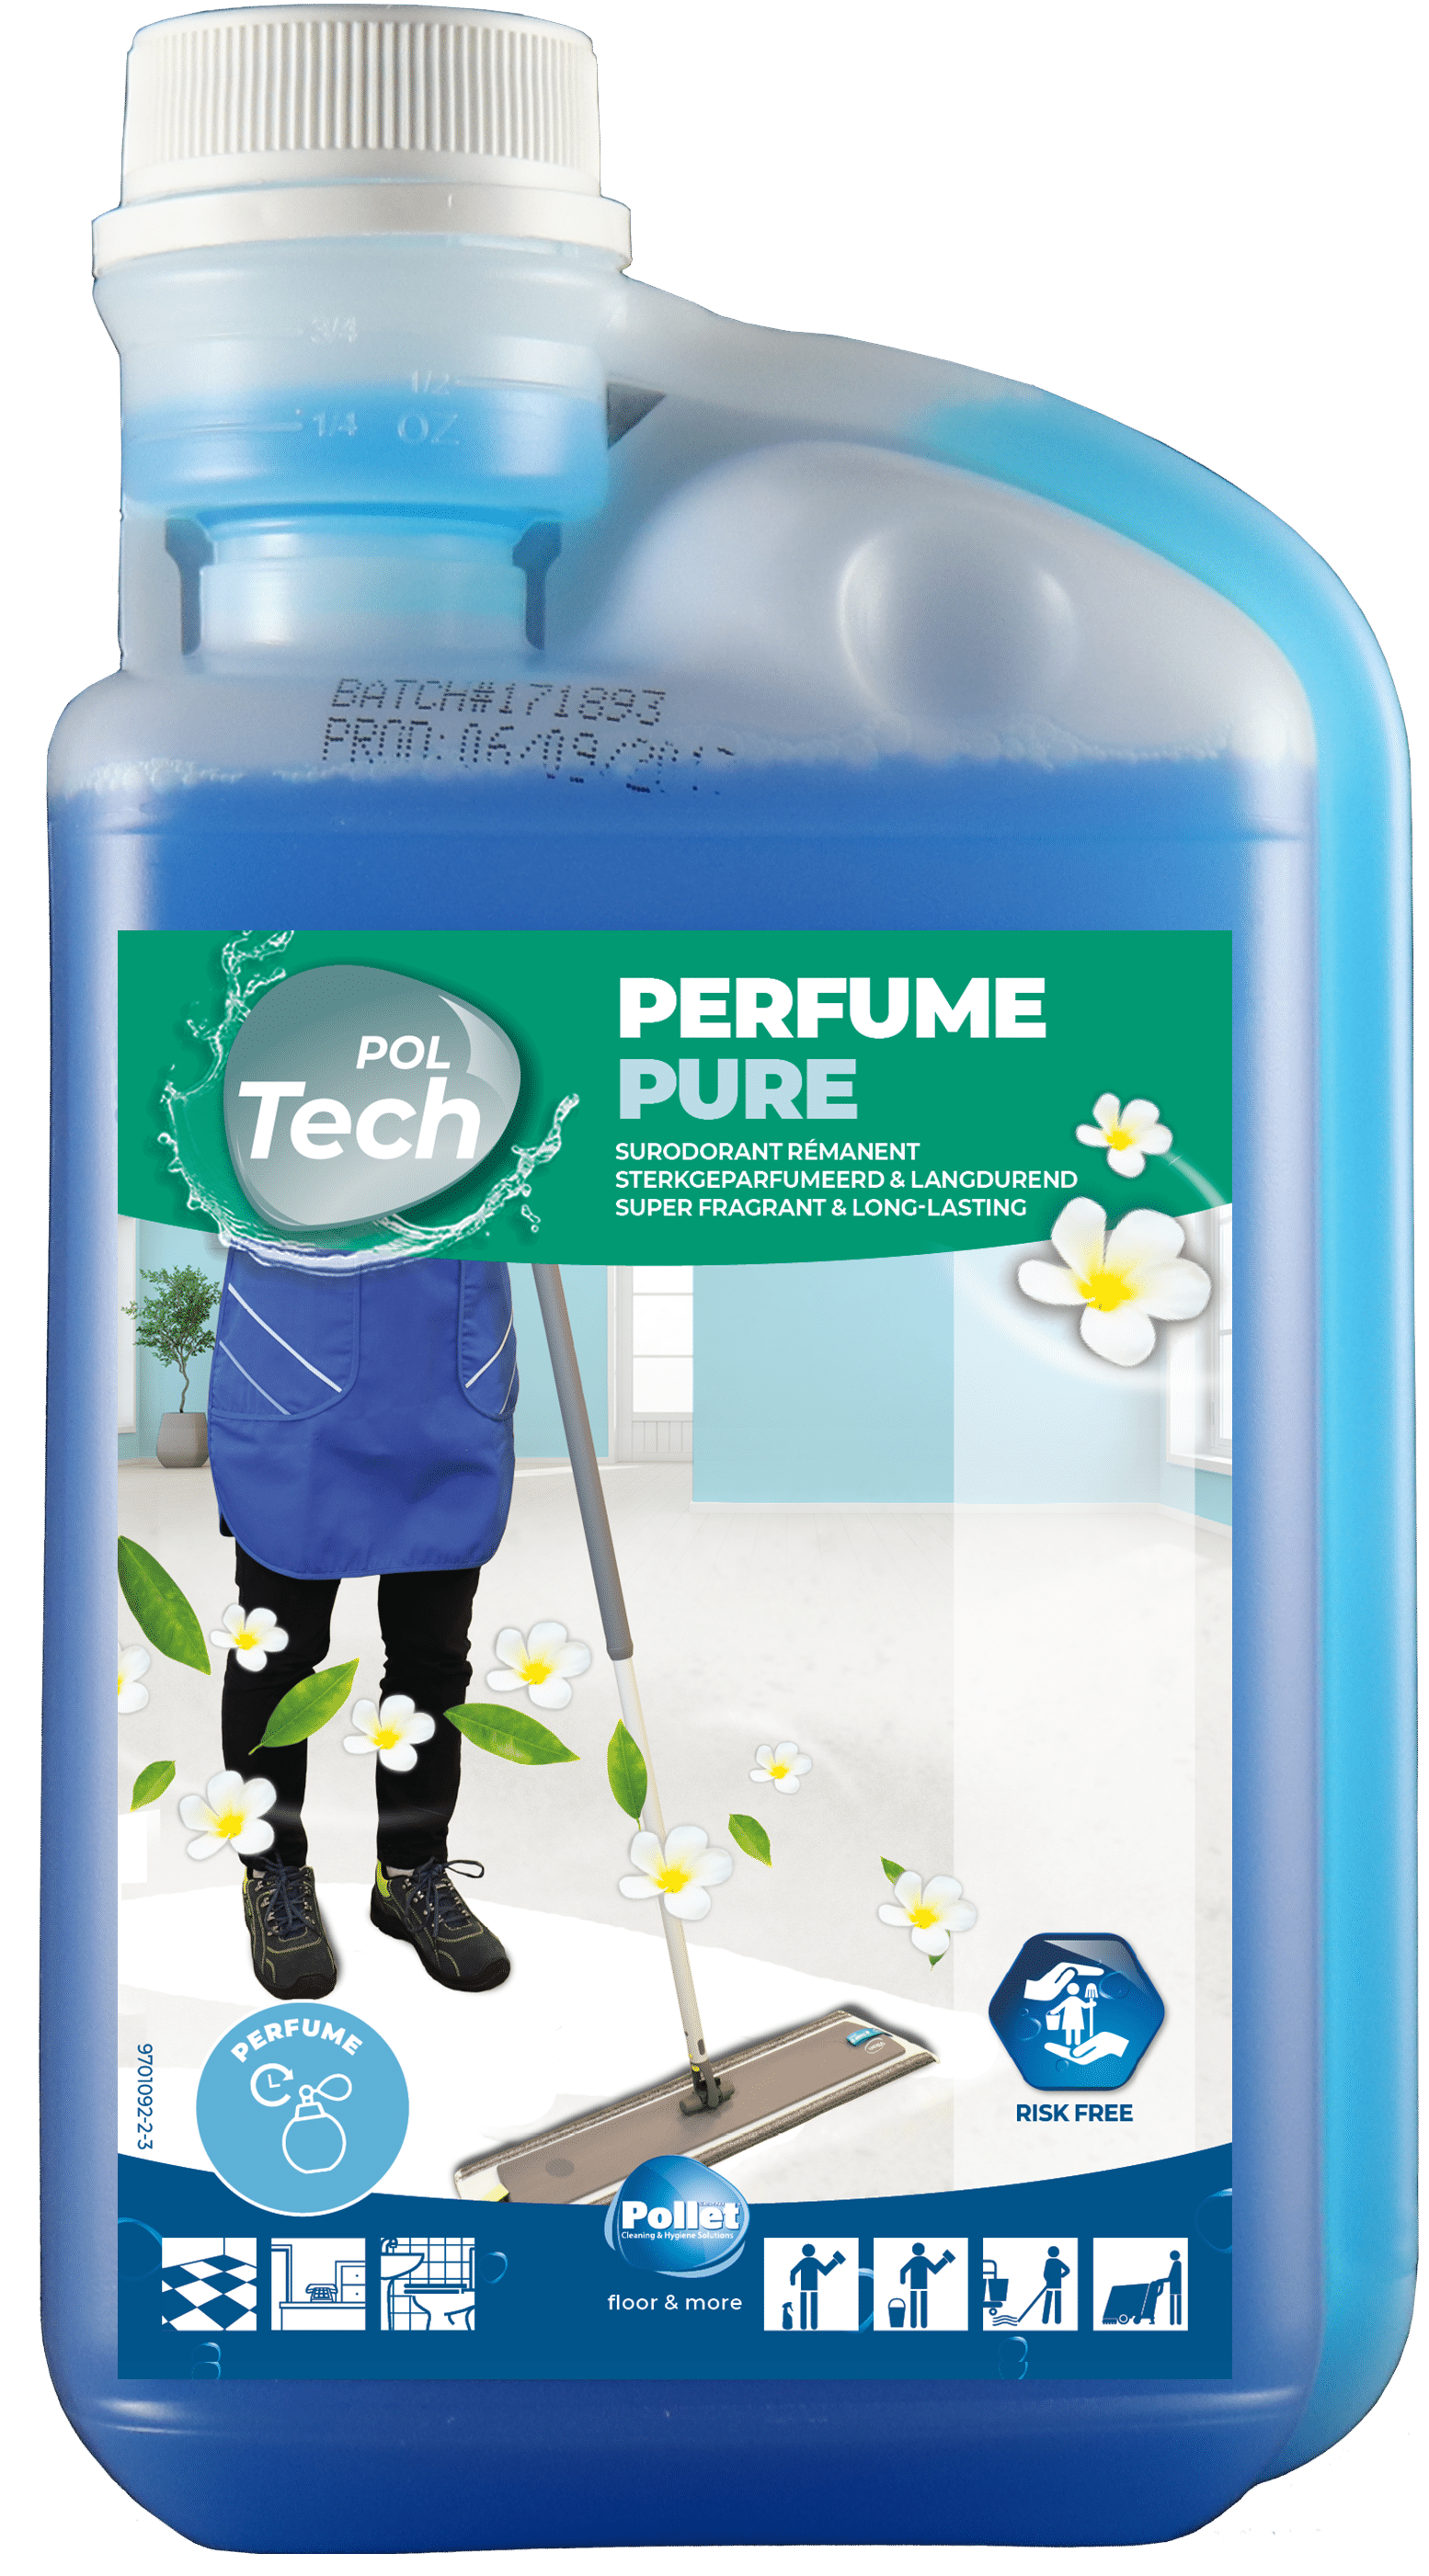 POLTECH PARFUM PURE Detergent 1L